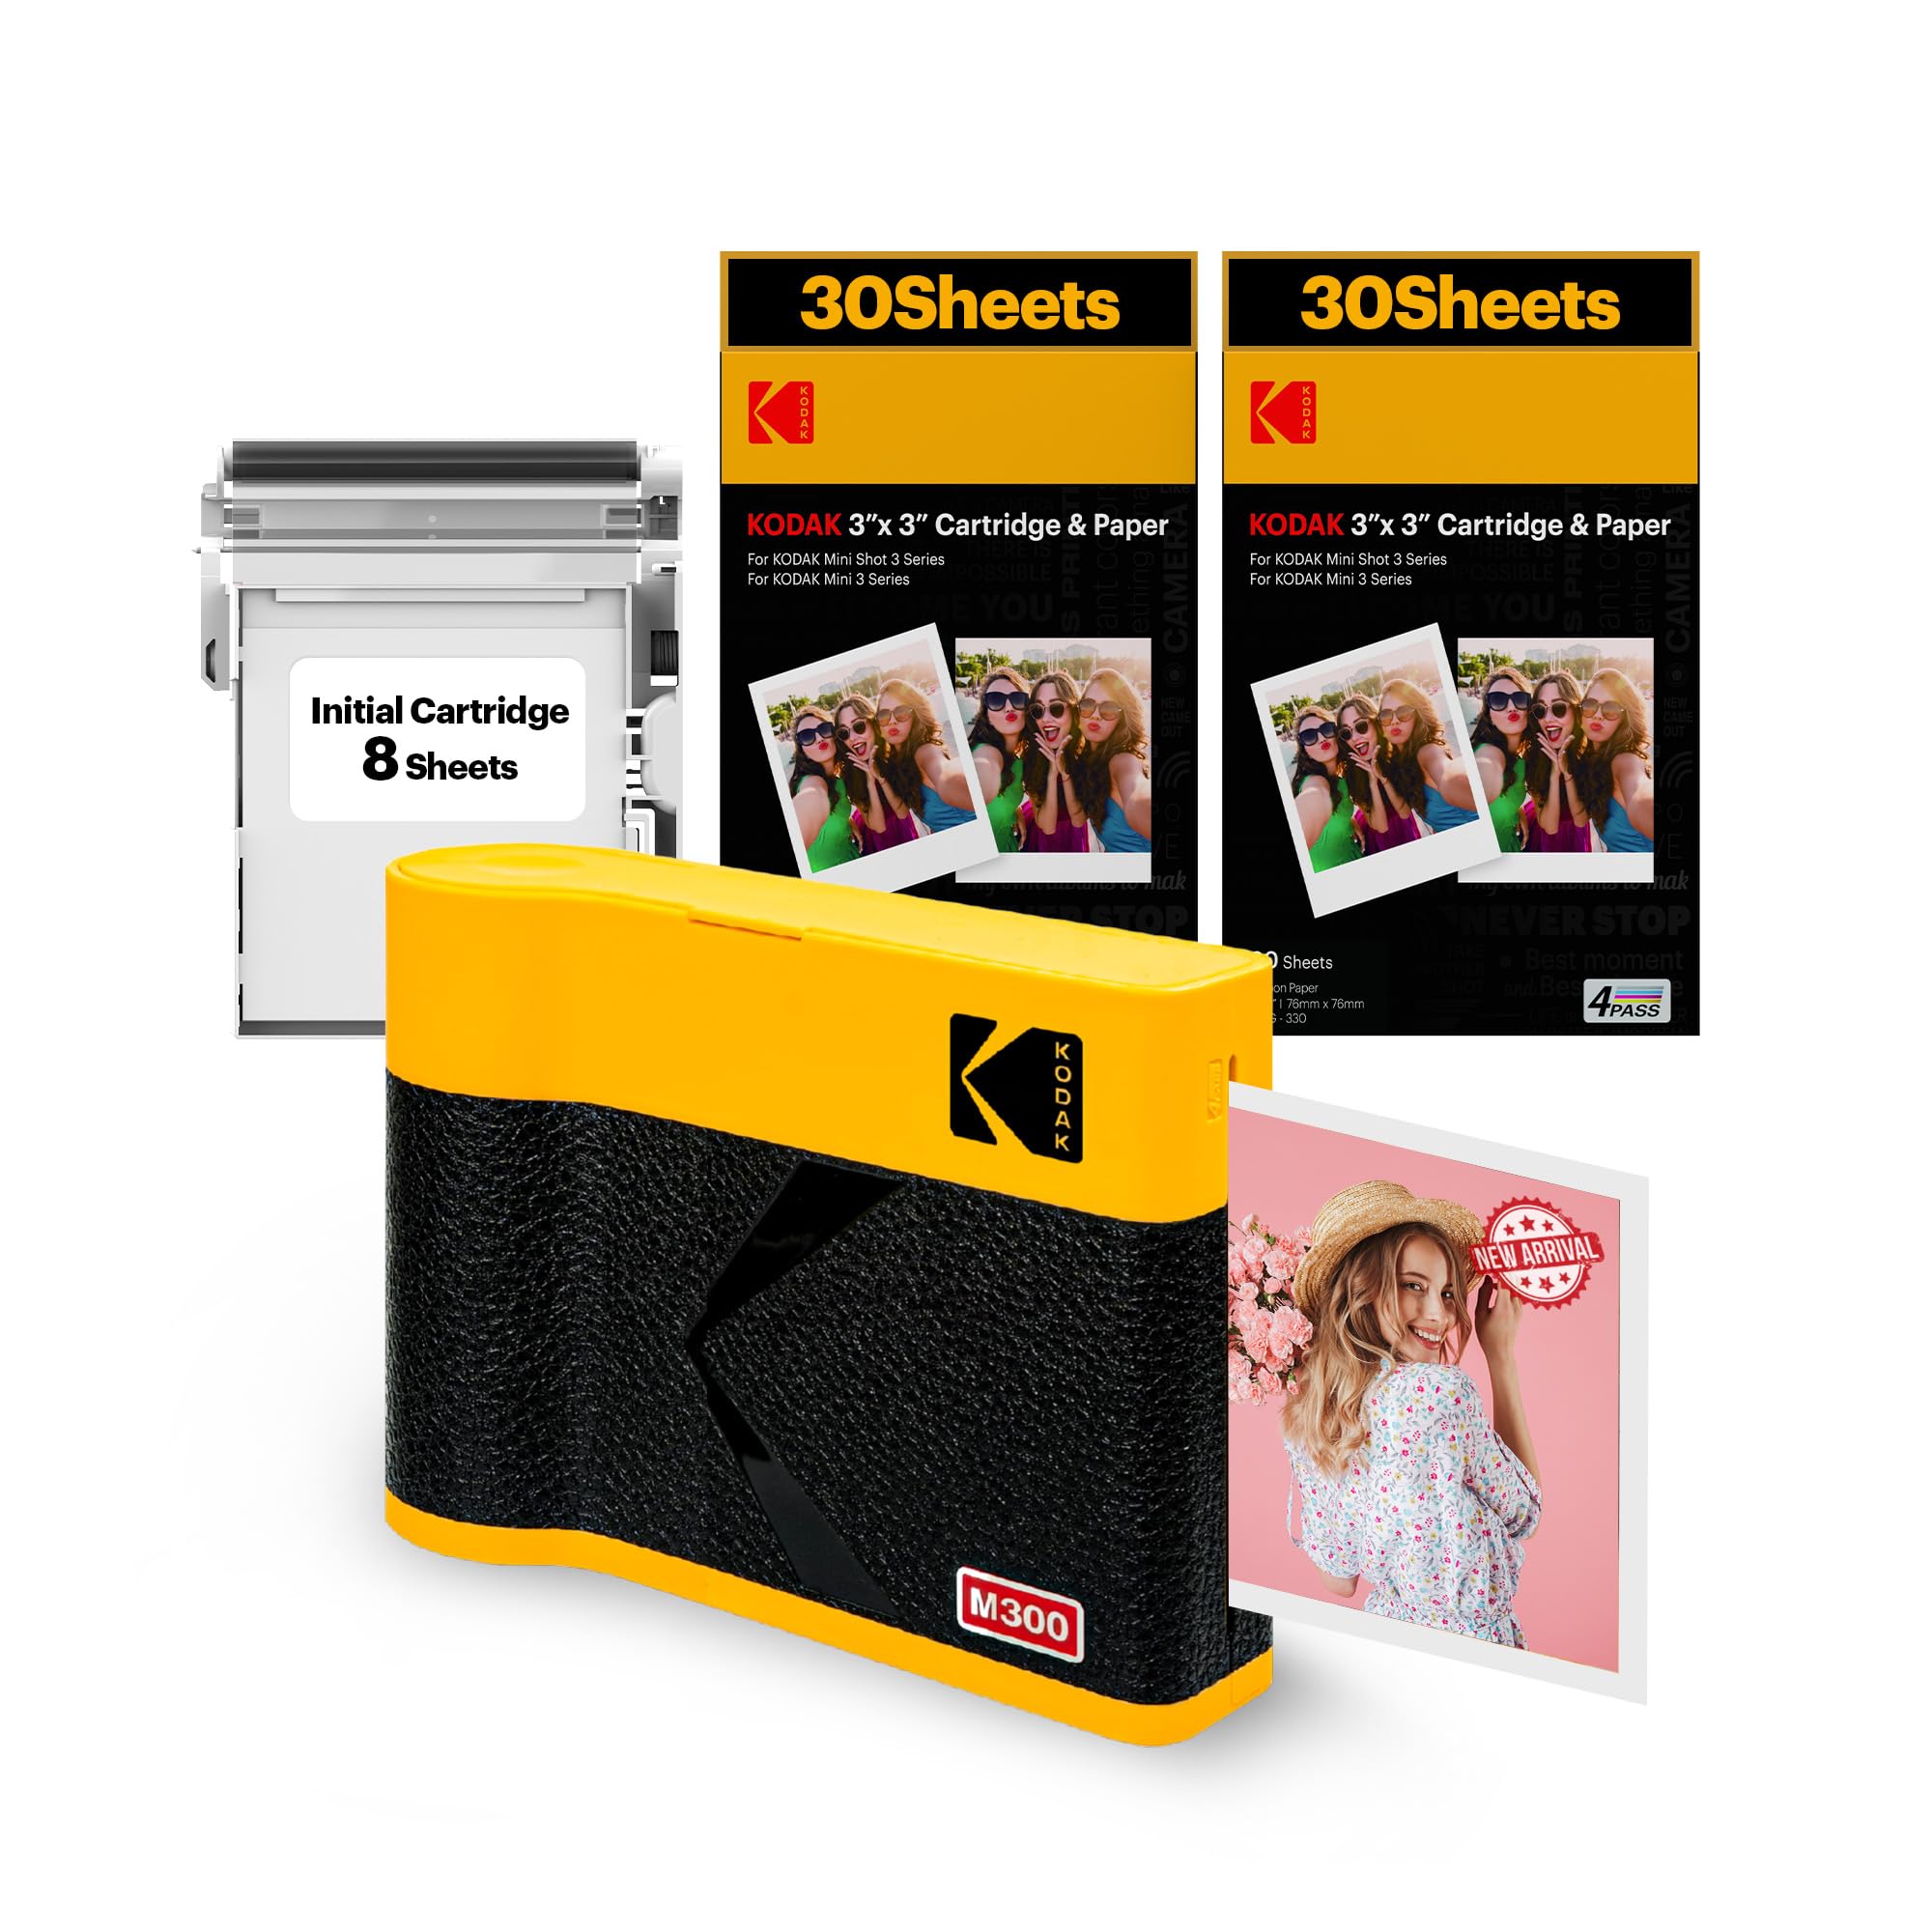 KODAK Mini 3 ERA 4PASS Mobiler Fotodrucker (7,6x7,6cm) (Gelb, Fotodrucker + Paket met 68 Blatts)